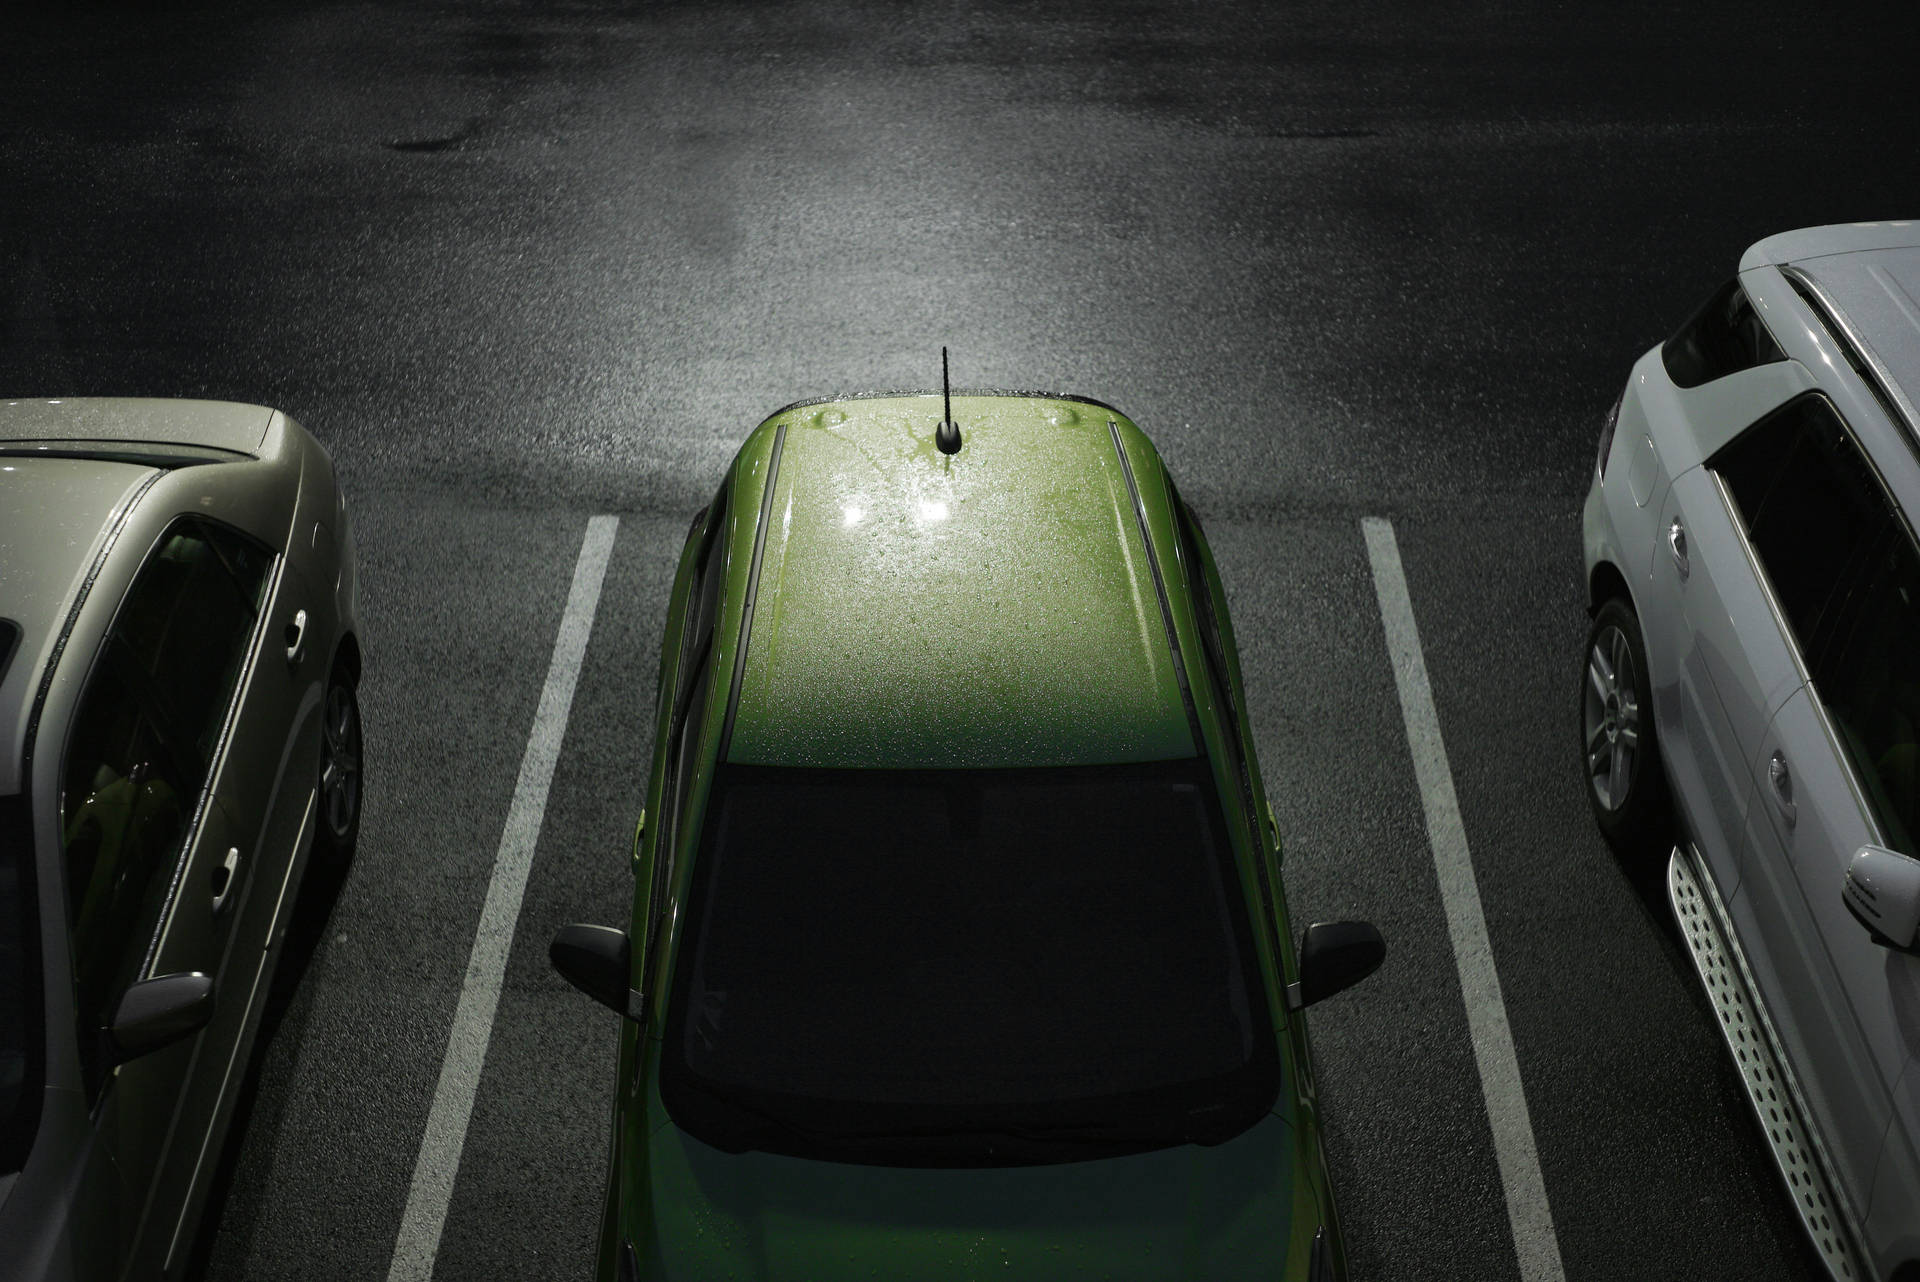 Hd Grøn Bil Parkeret På Parkeringsplads Wallpaper